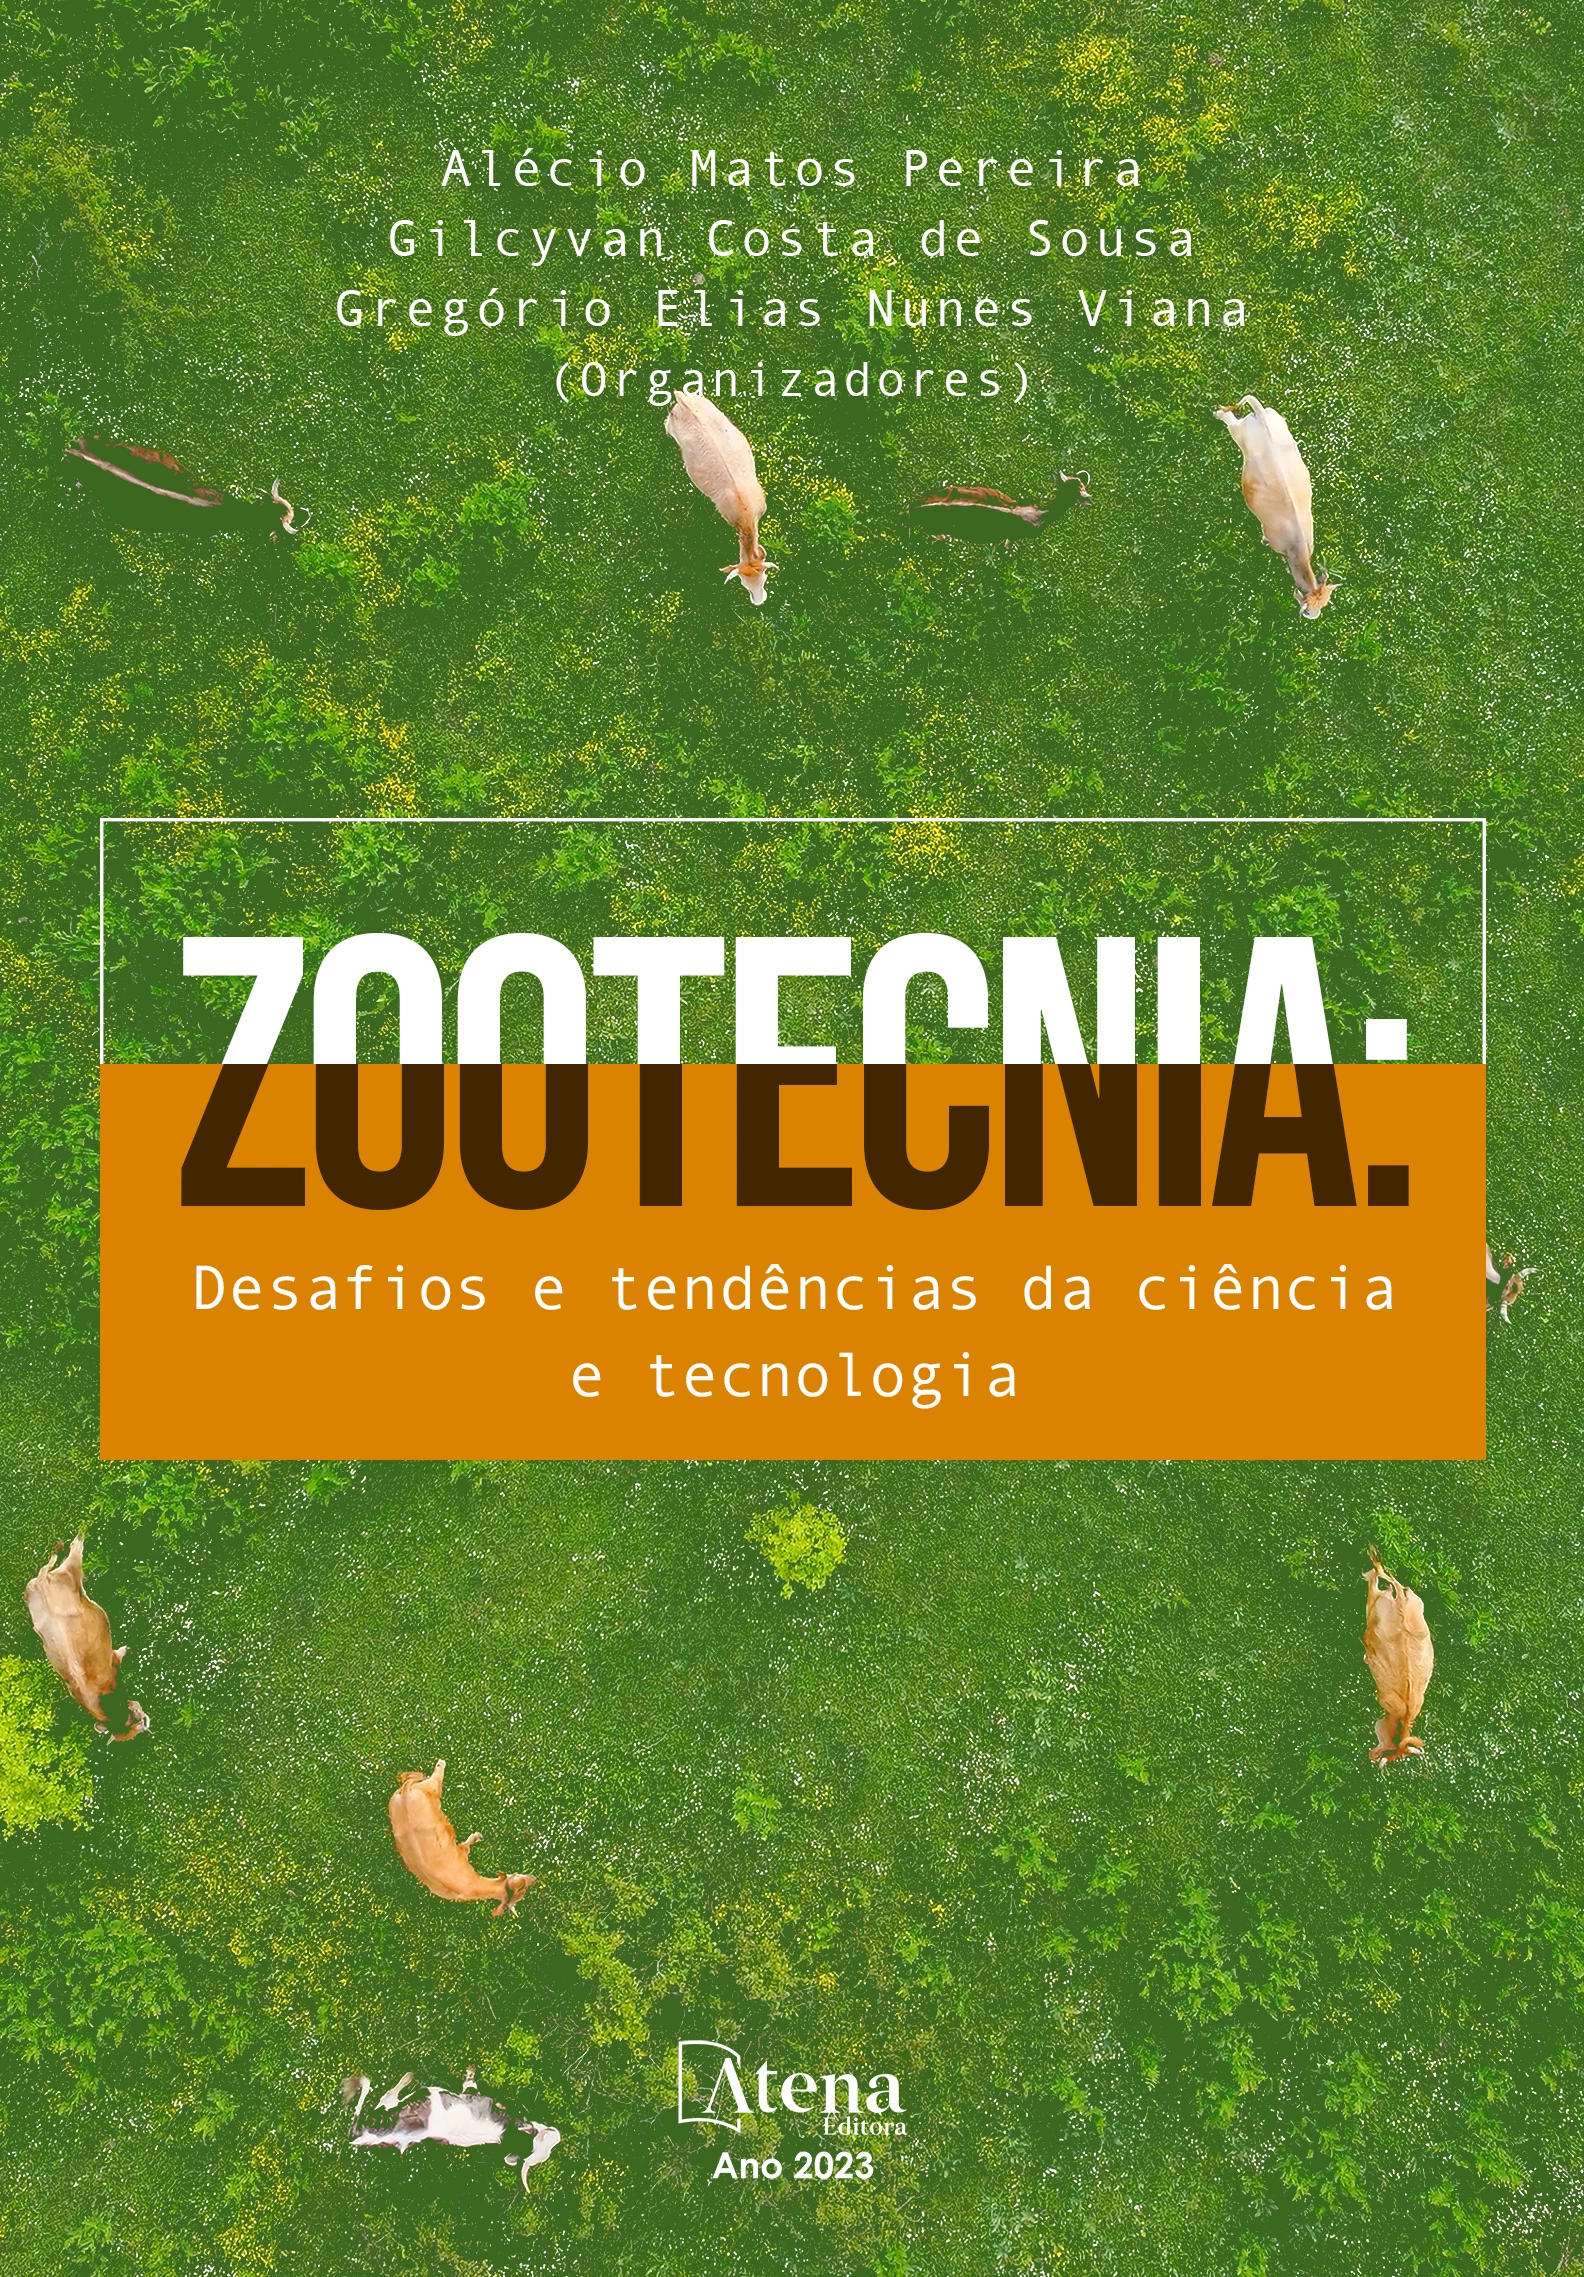 capa do ebook Zootecnia: Desafios e tendências da ciência e tecnologia